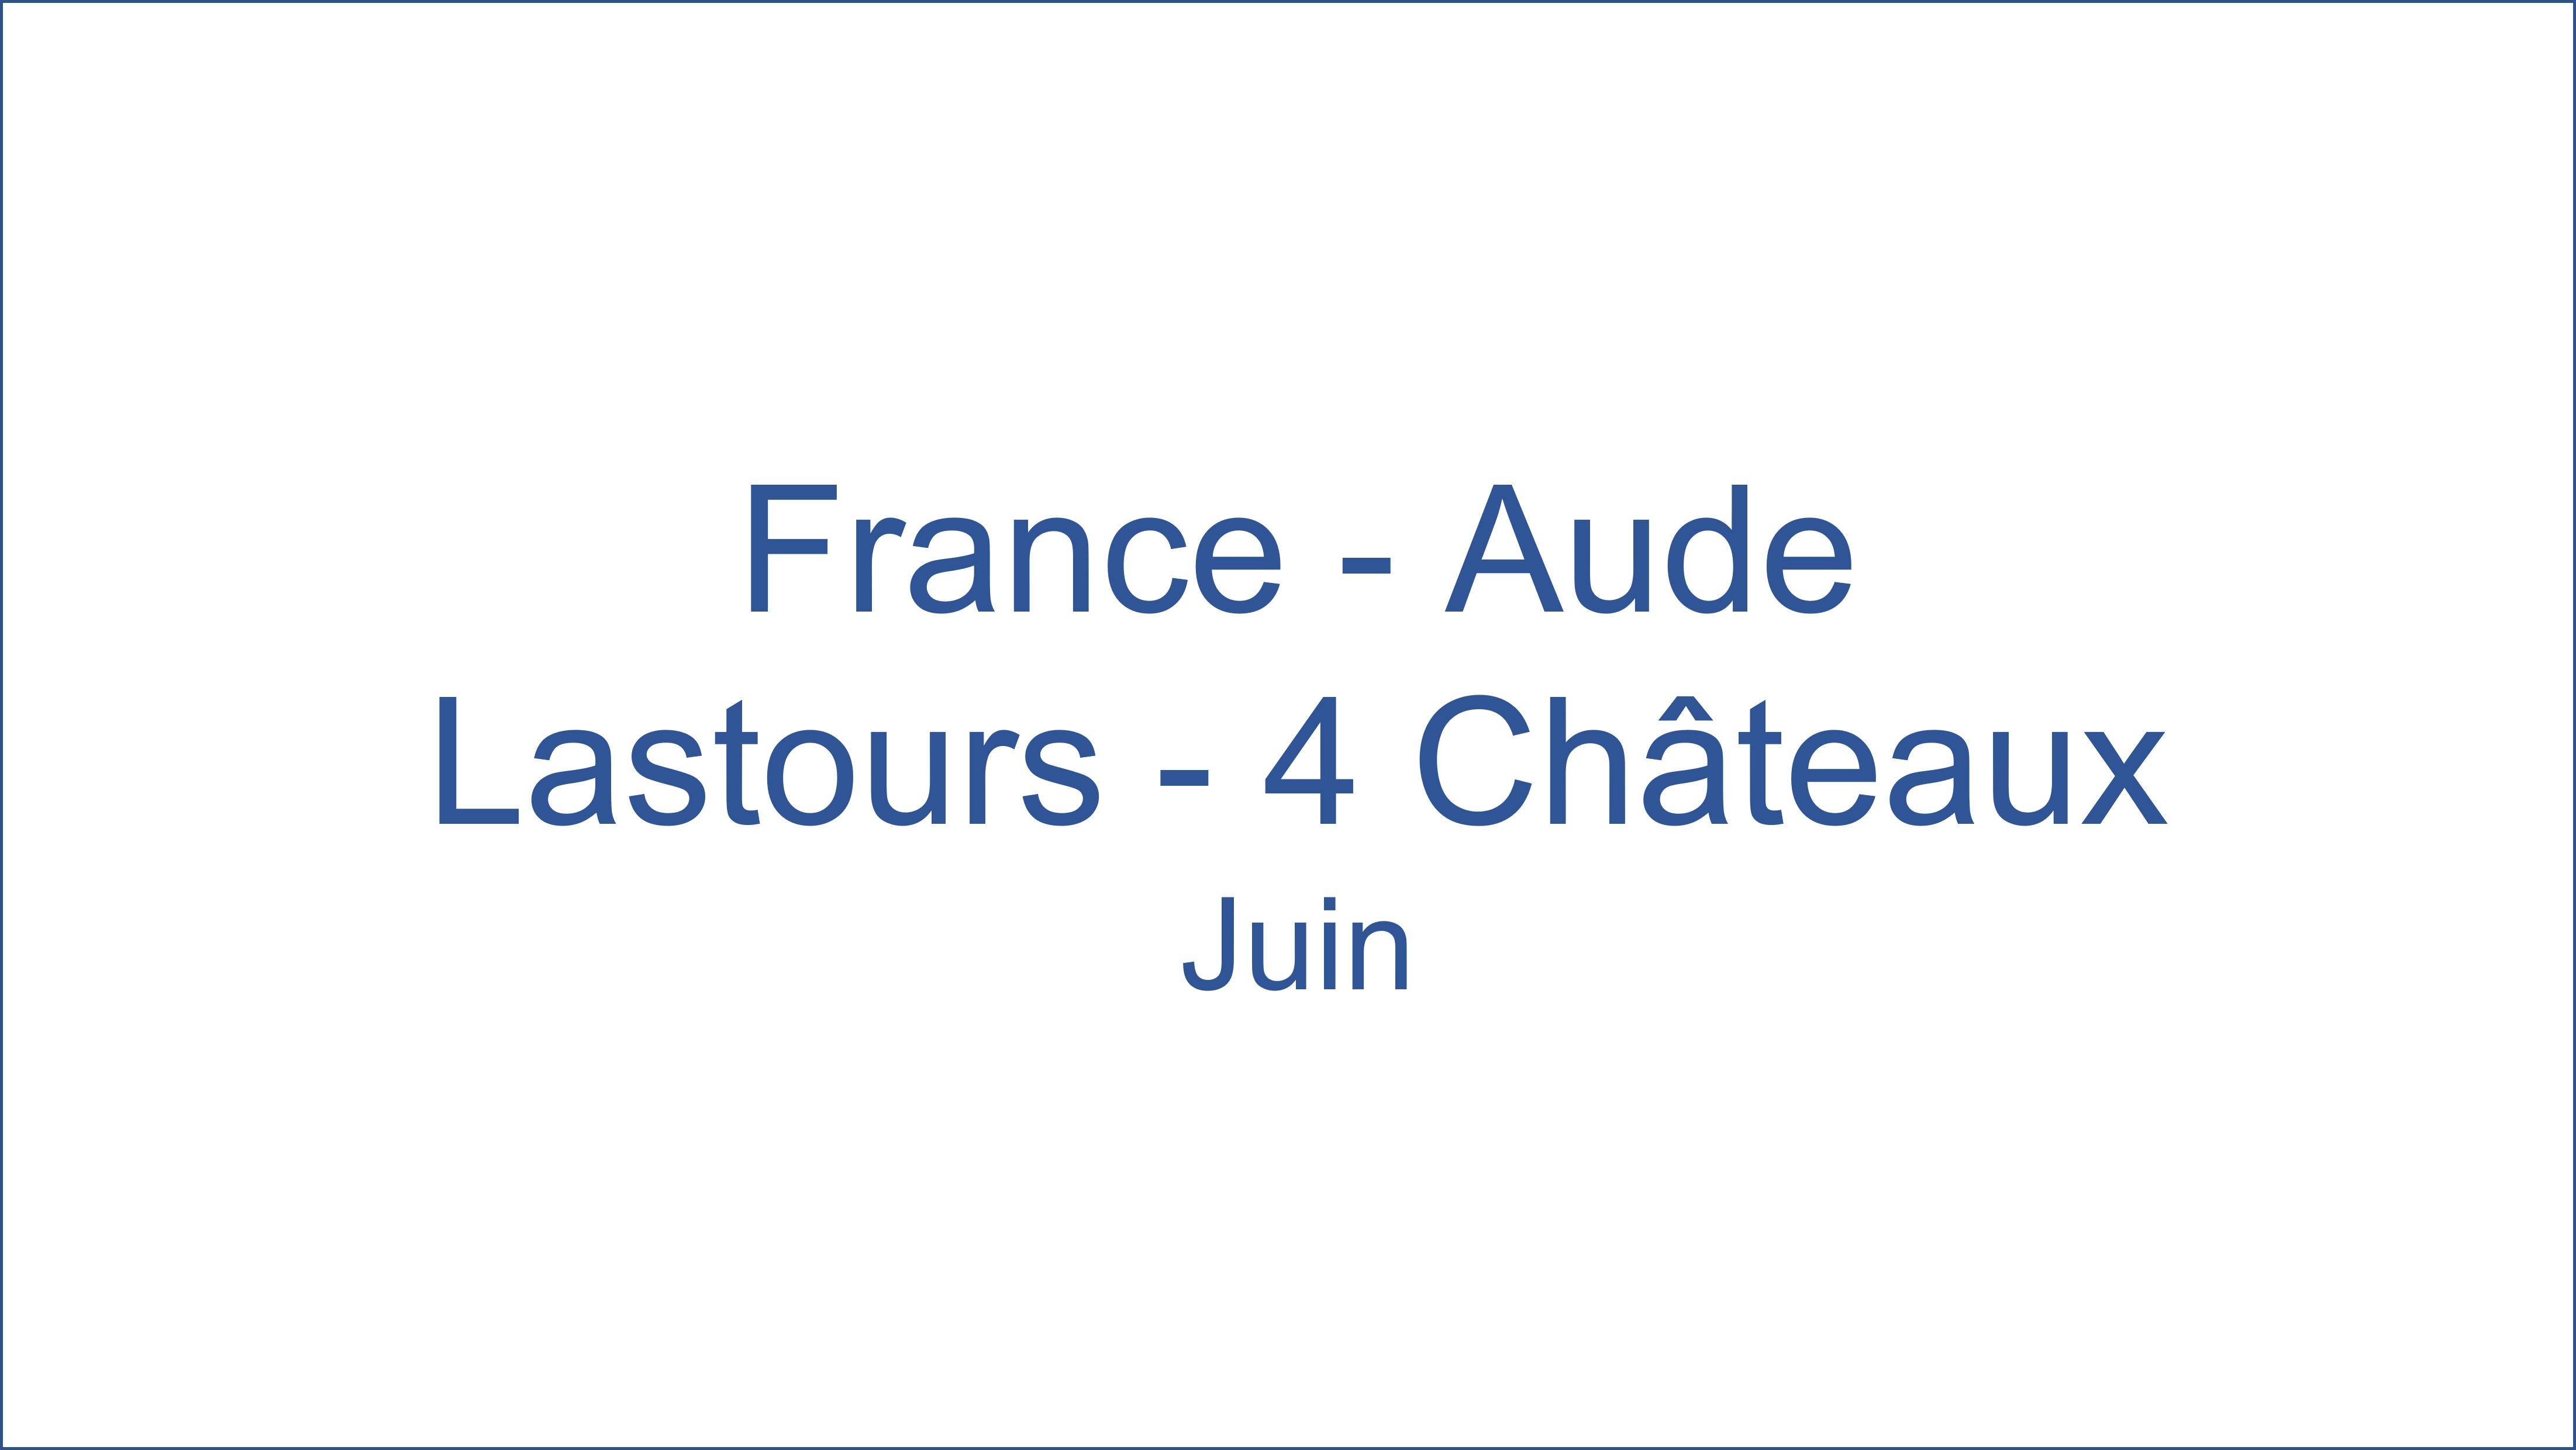 France  Aude Lastours - 4 Chteaux Juin 06/2021